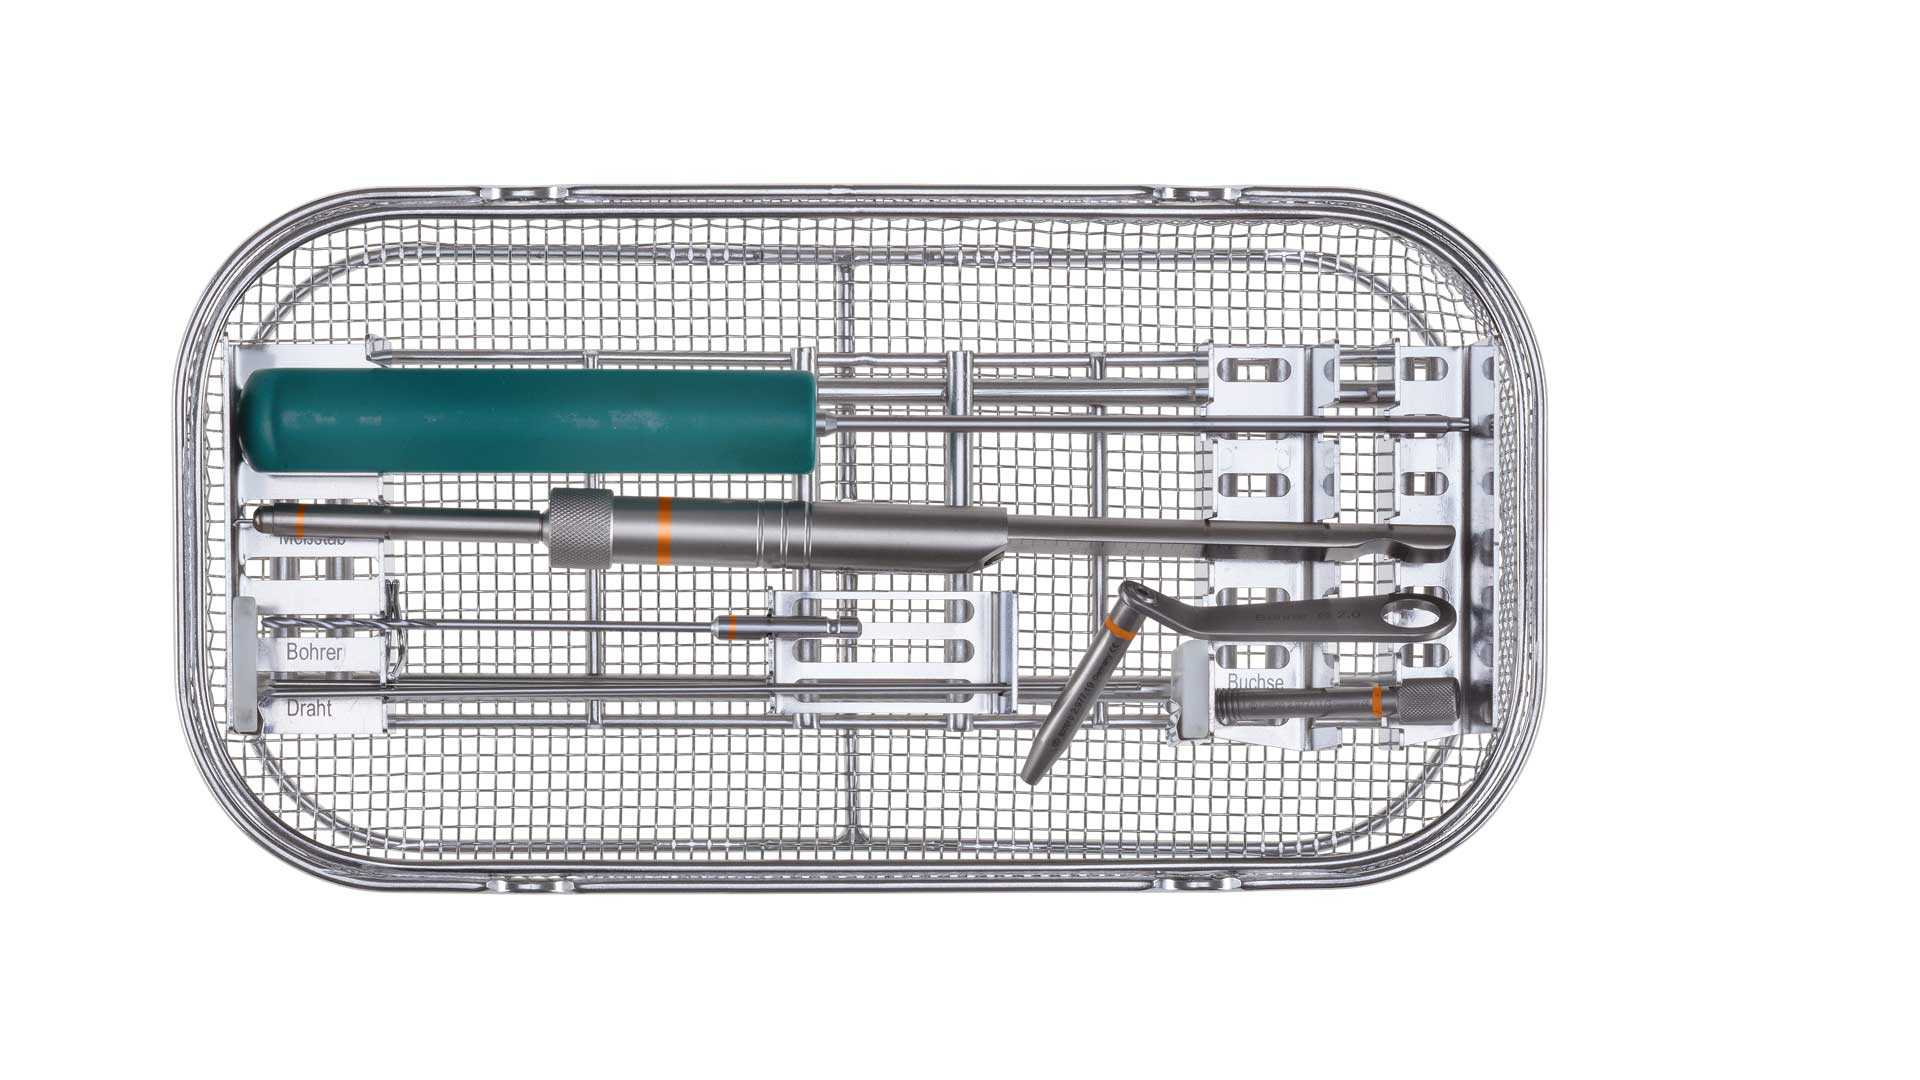 Königsee Implantate Produkte: Set Instrumente 2.7 ISR, aus der Kategorie Instumente